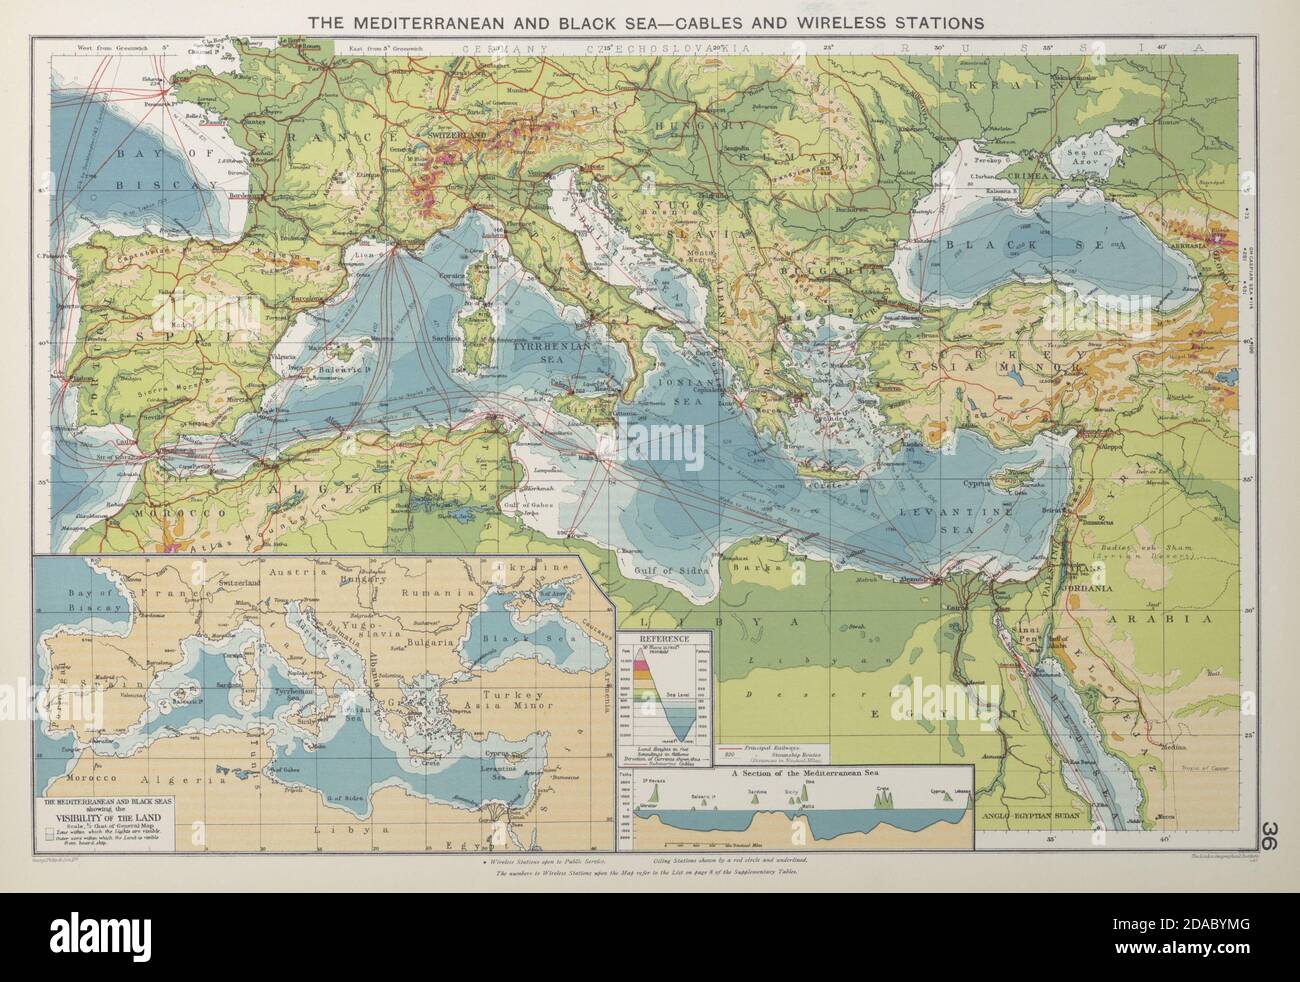 Mittelmeer Und Schwarzes Meer. Kabel. Sichtverhältnisse an Land. Versandlinien 1927 Karte Stockfoto